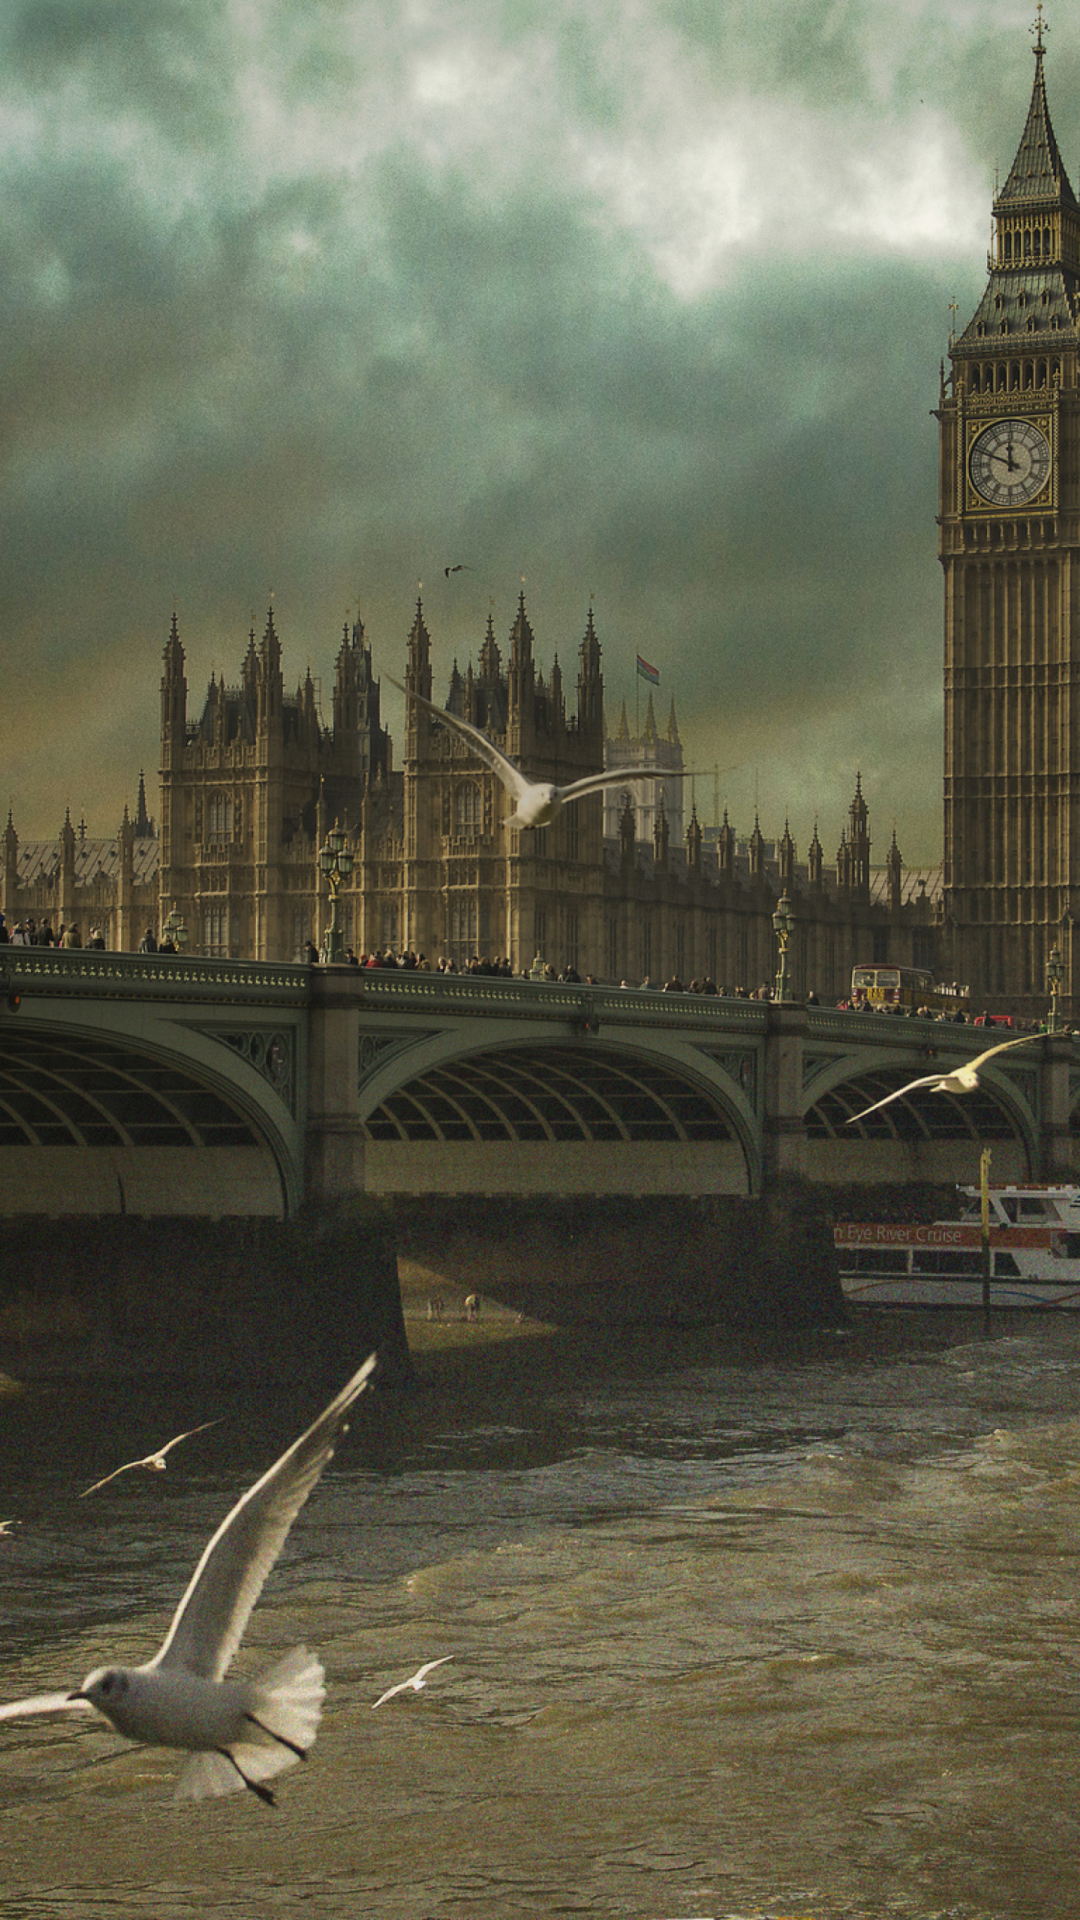 Sfondi Dramatic Big Ben And Seagulls In London England 1080x1920